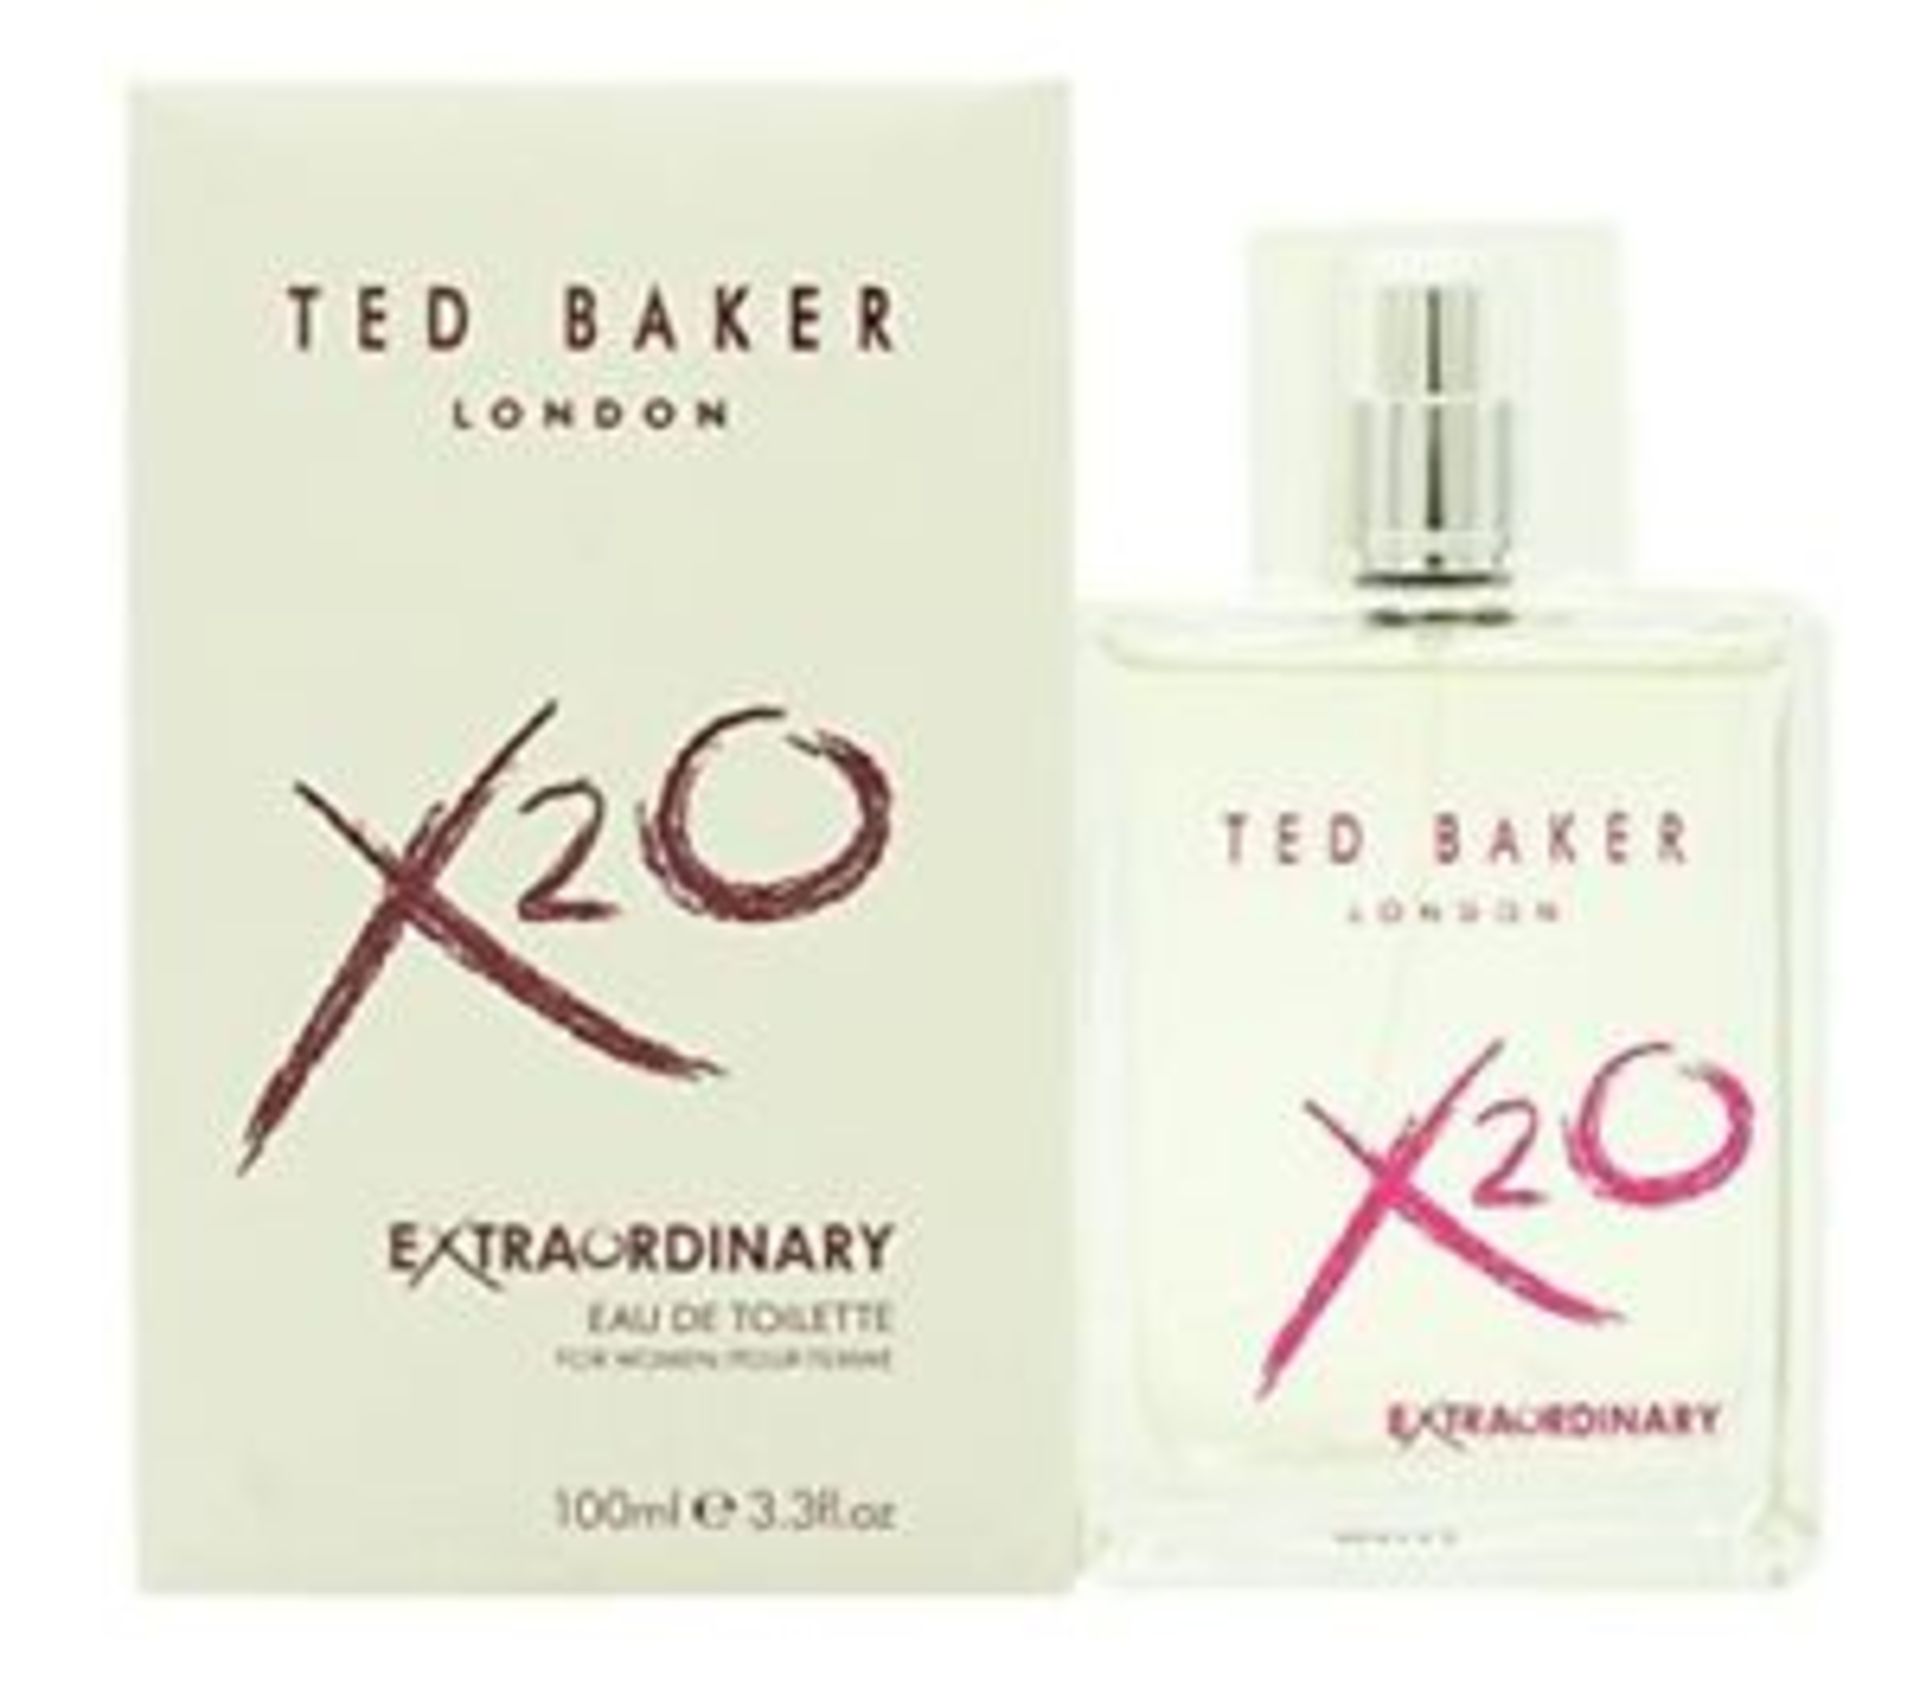 + VAT Brand New 100ml Ted Baker London X20 Extraordinary Eau De Toilette Pour Femme ISP £26.24 (